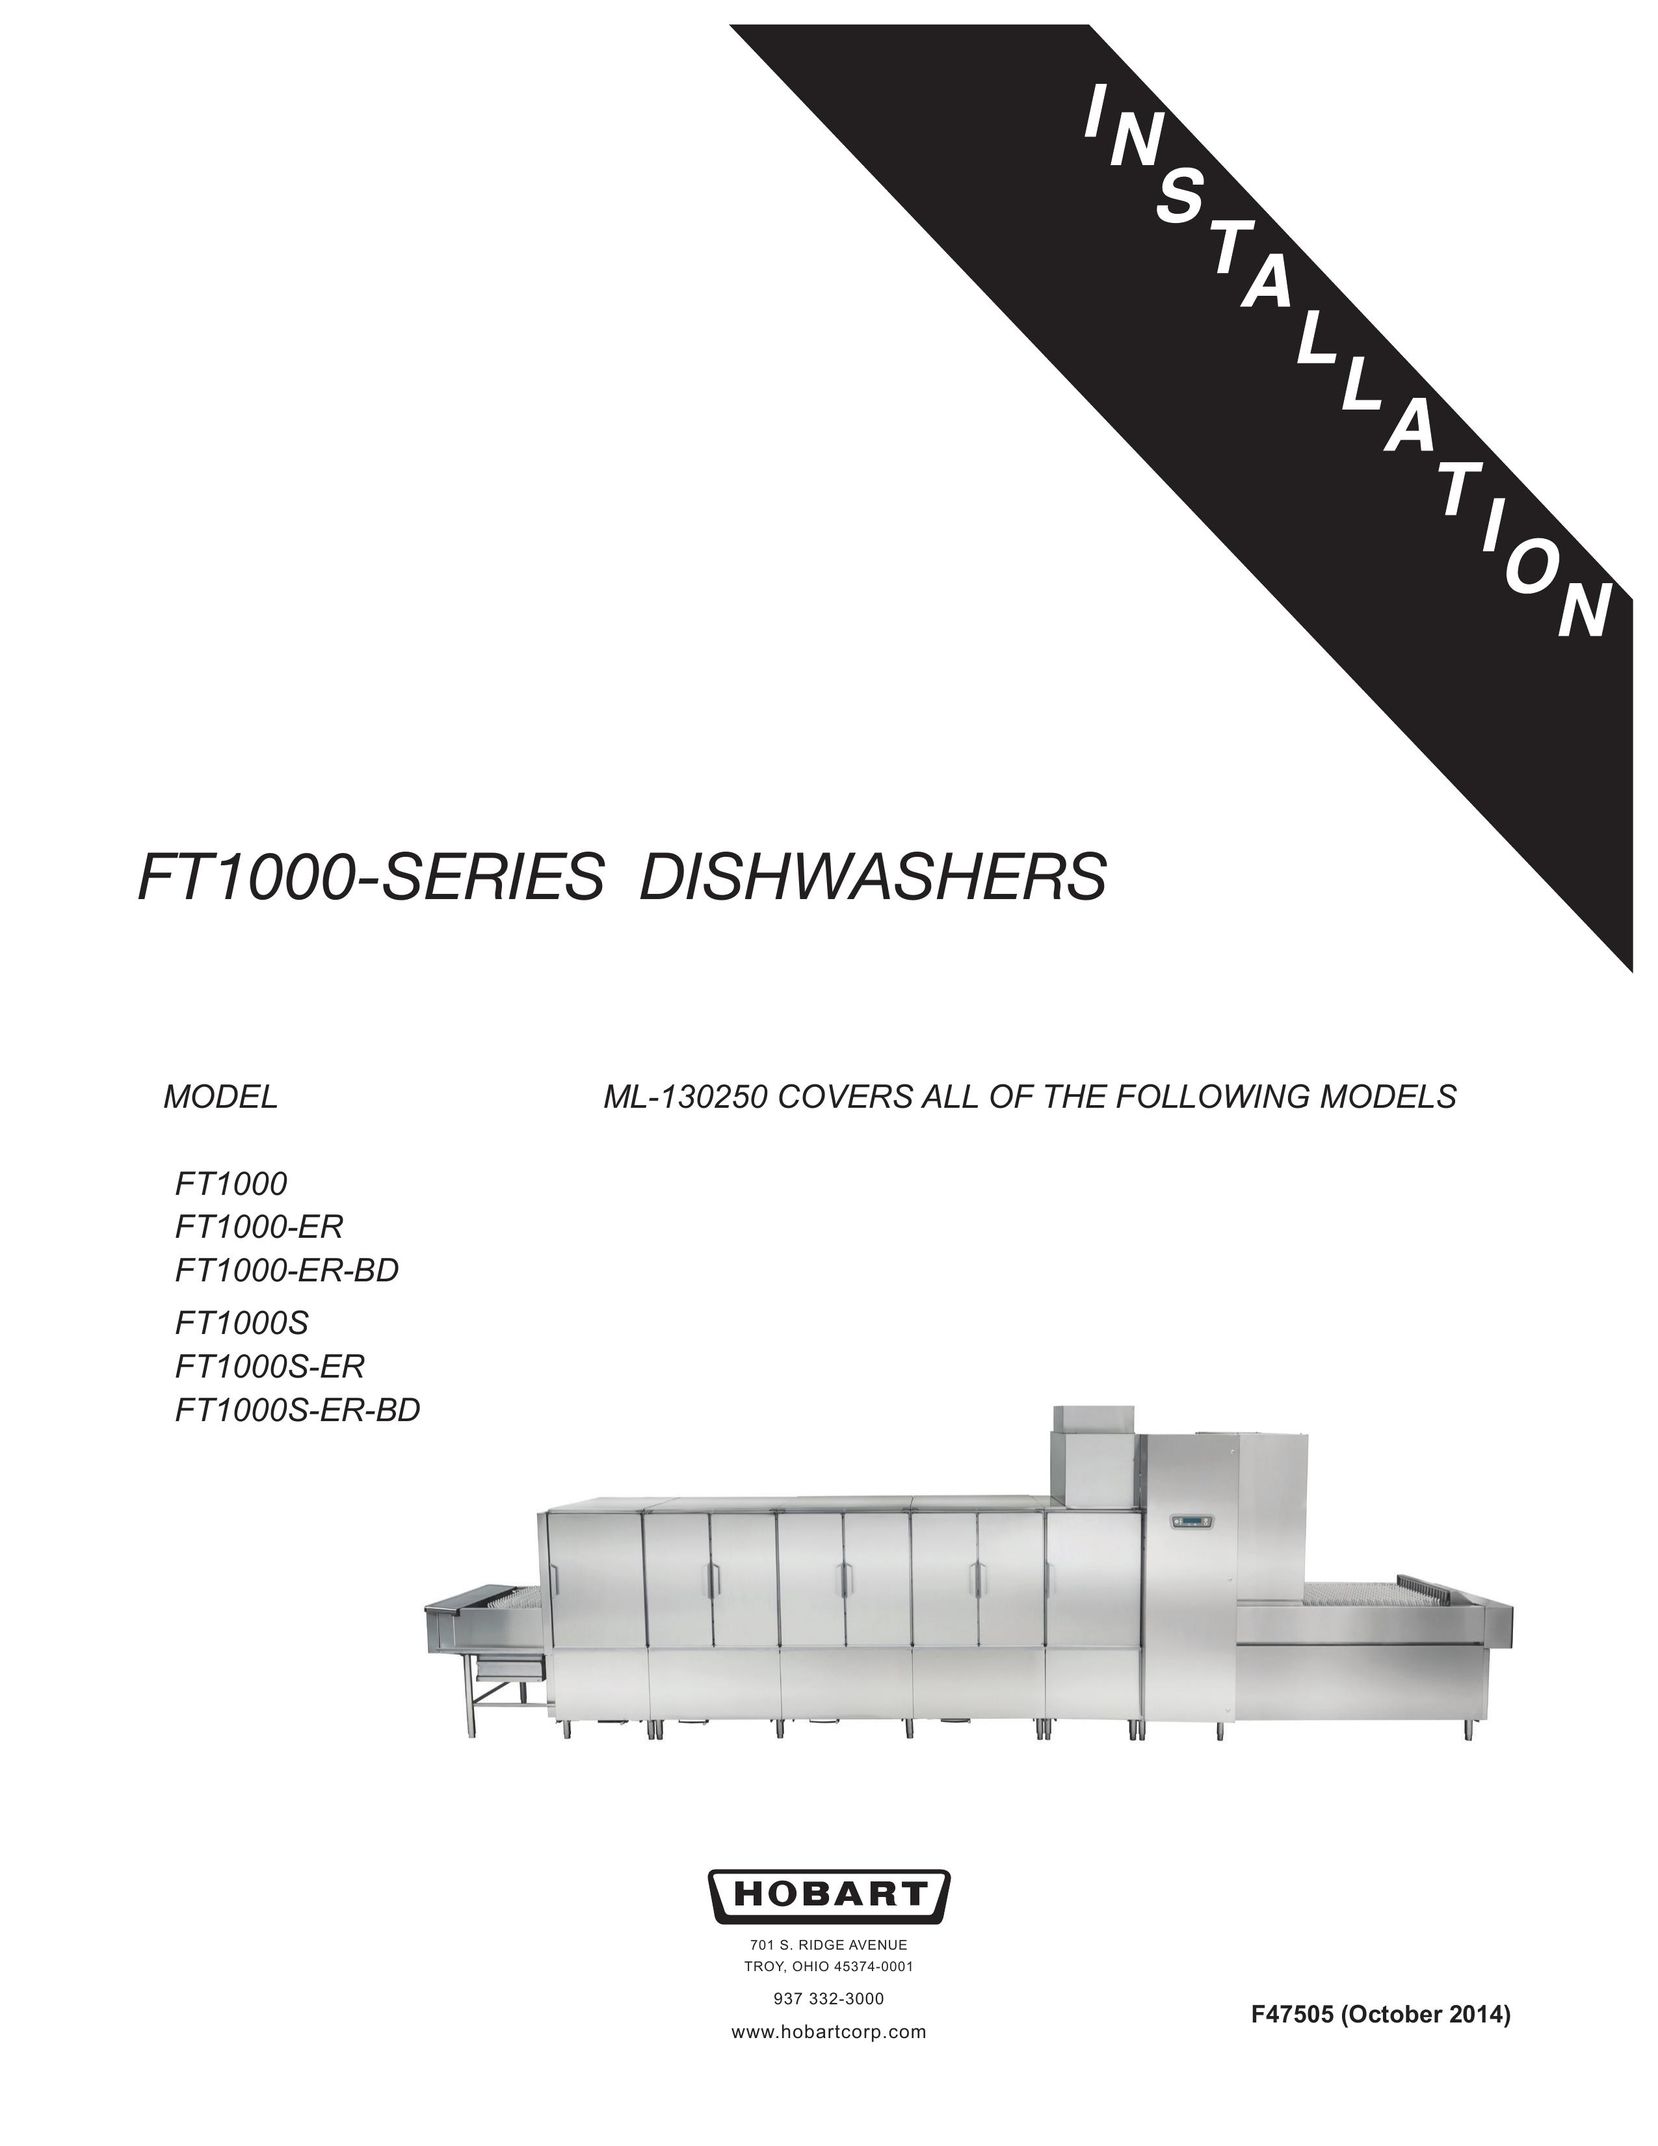 Hobart FT1000S-ER-BD Dishwasher User Manual